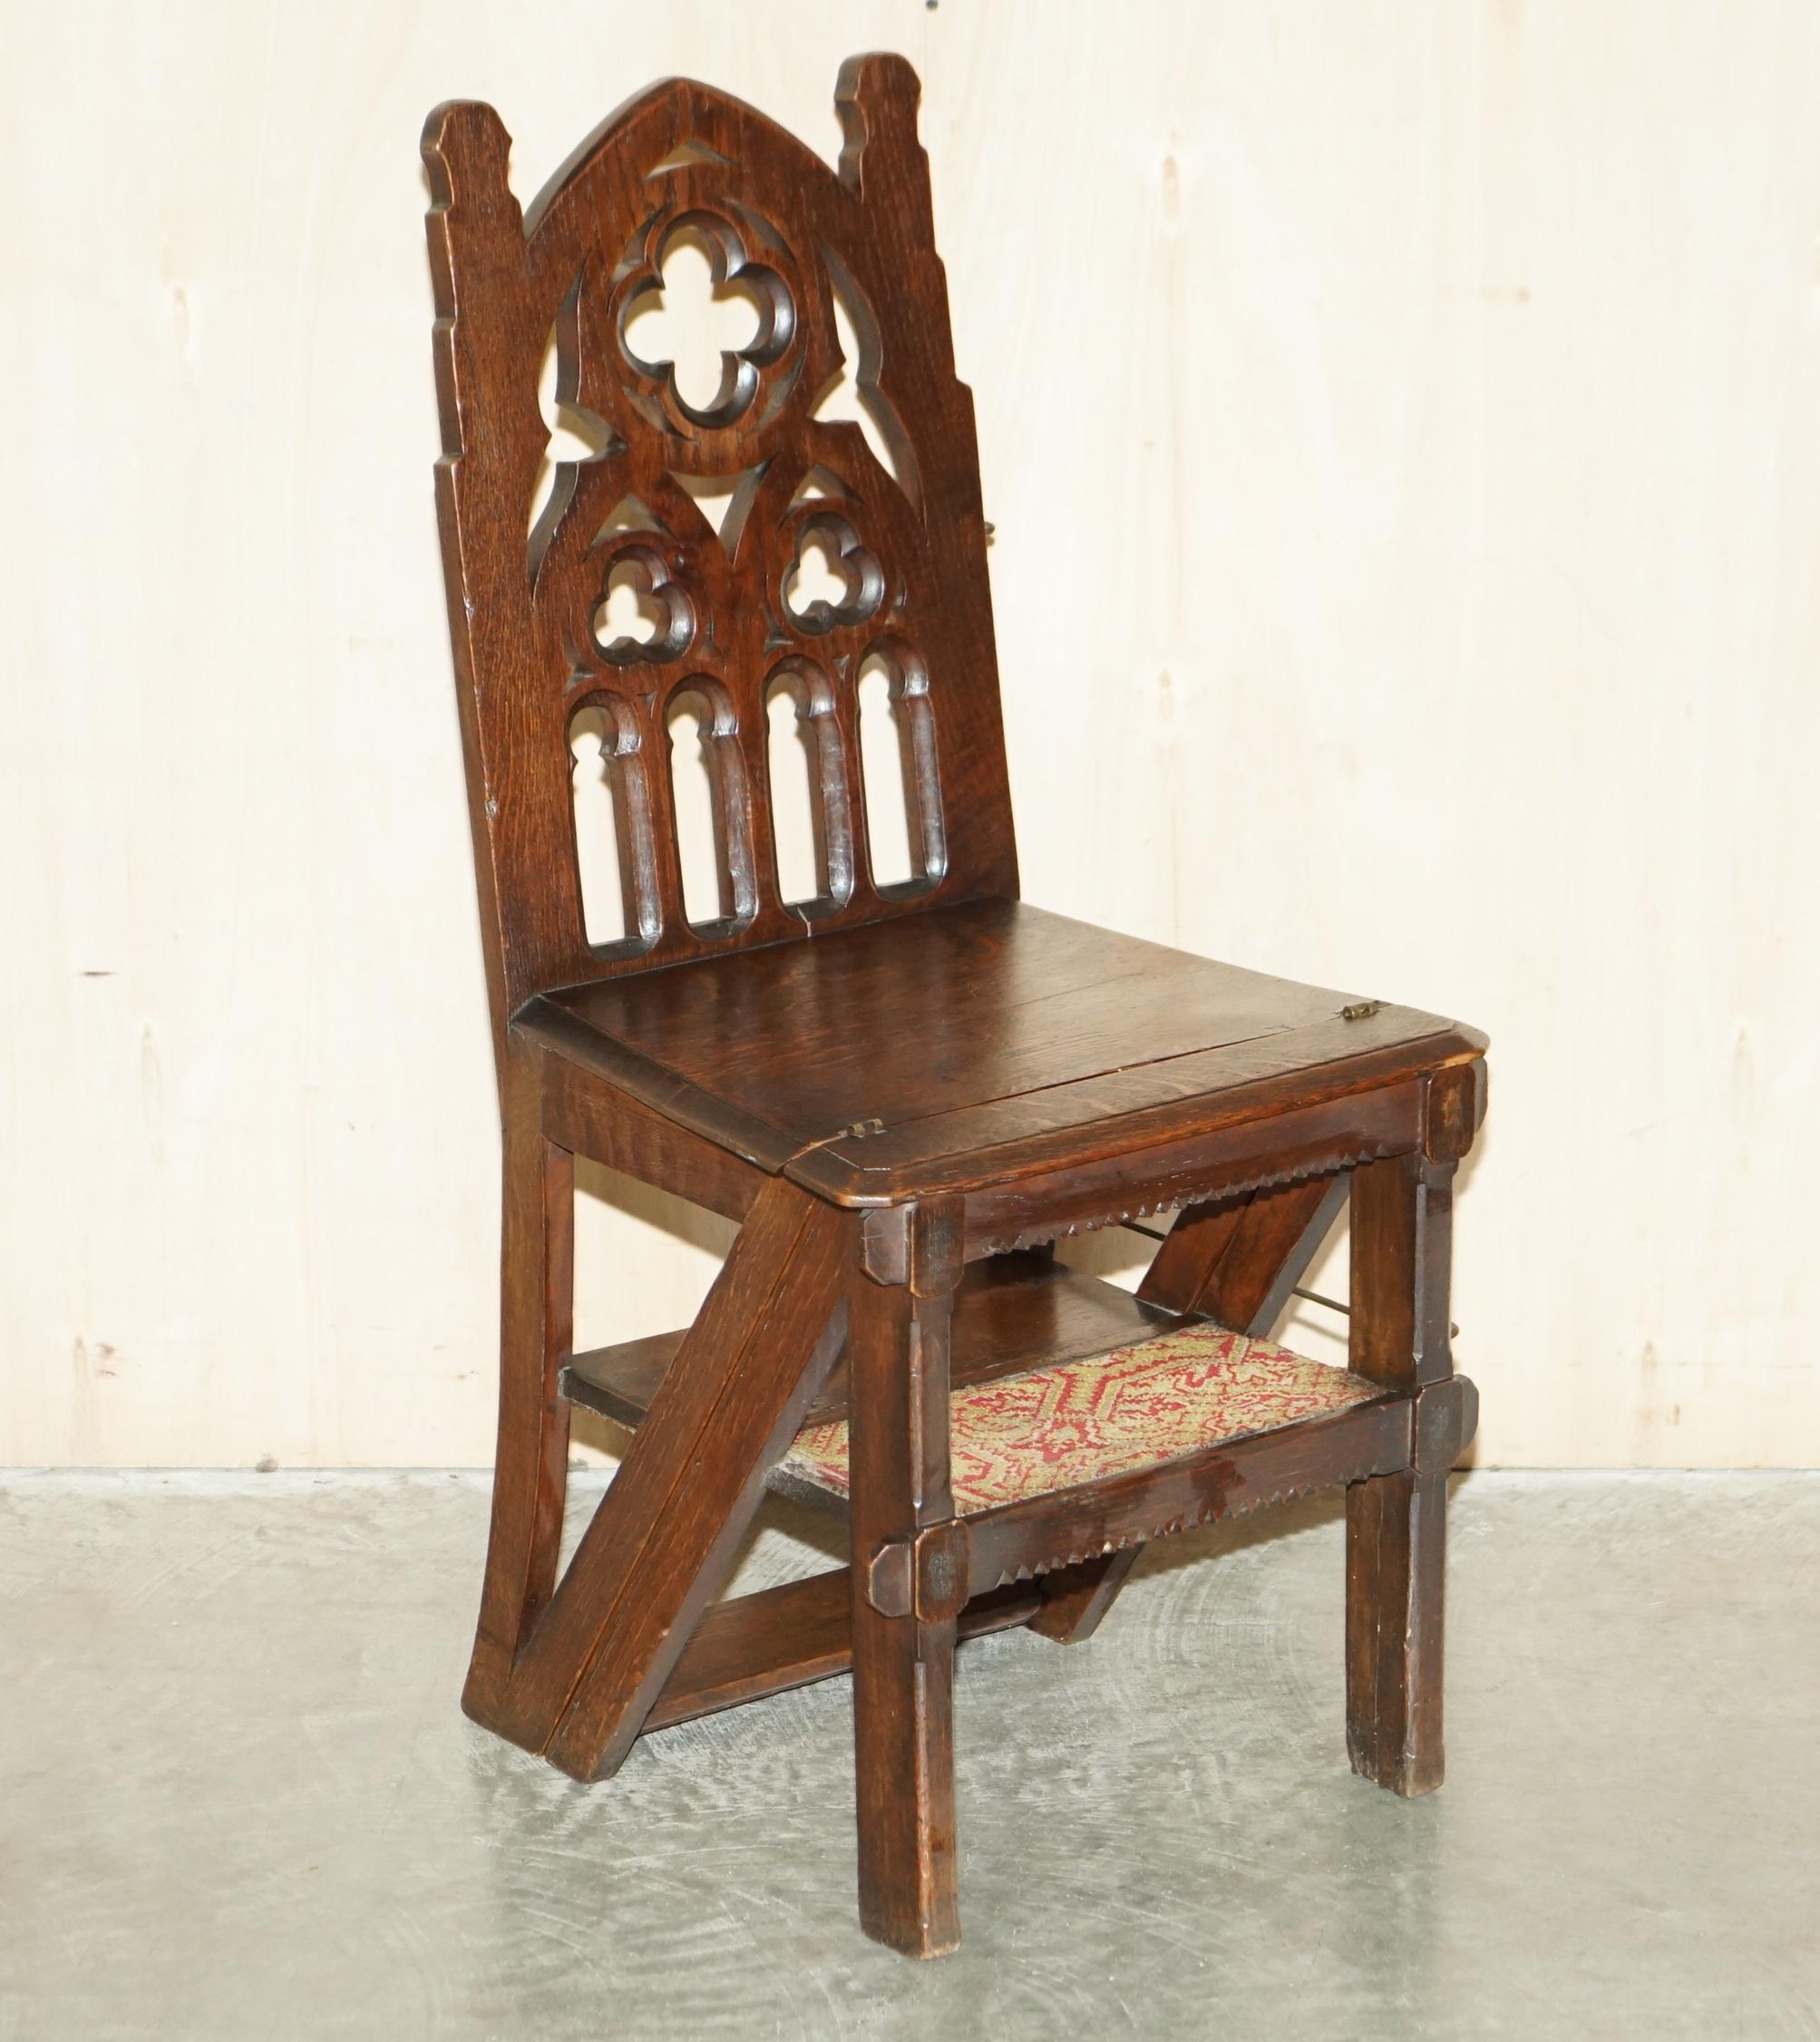 Nous sommes ravis d'offrir à la vente cette belle chaise de bibliothèque gothique métamorphique d'environ 1850 en chêne sculpté à la main avec des marches tapissées d'origine

Une pièce très charmante et de grande collection, conçue comme une